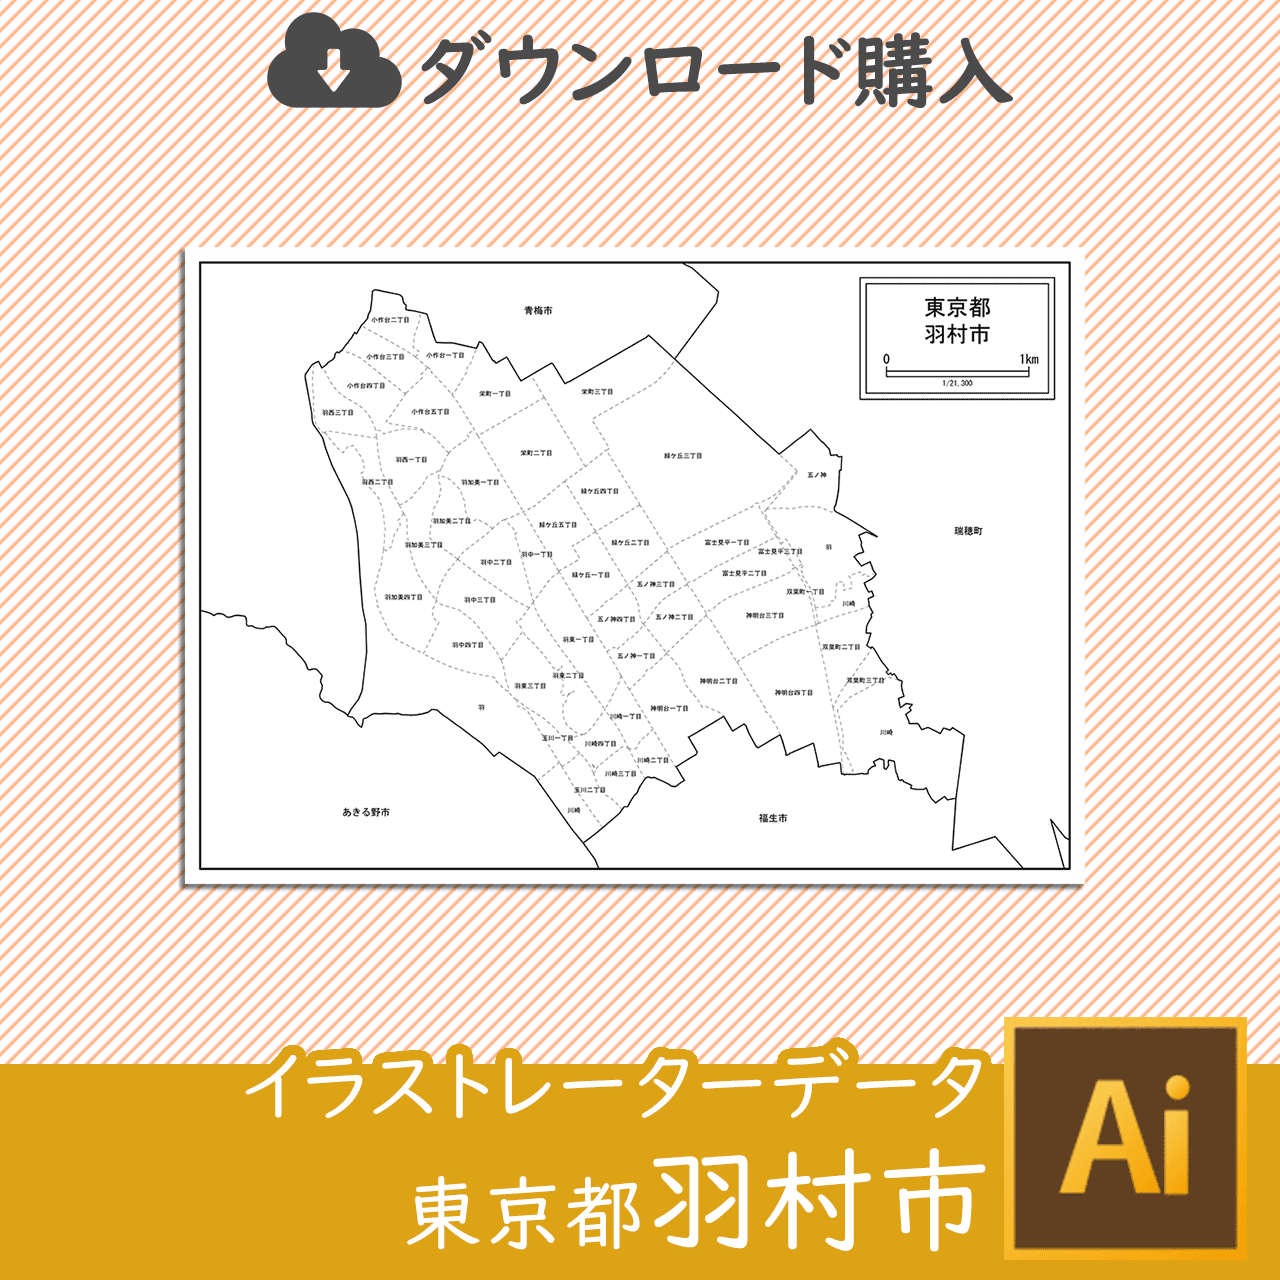 羽村市のaiデータのサムネイル画像